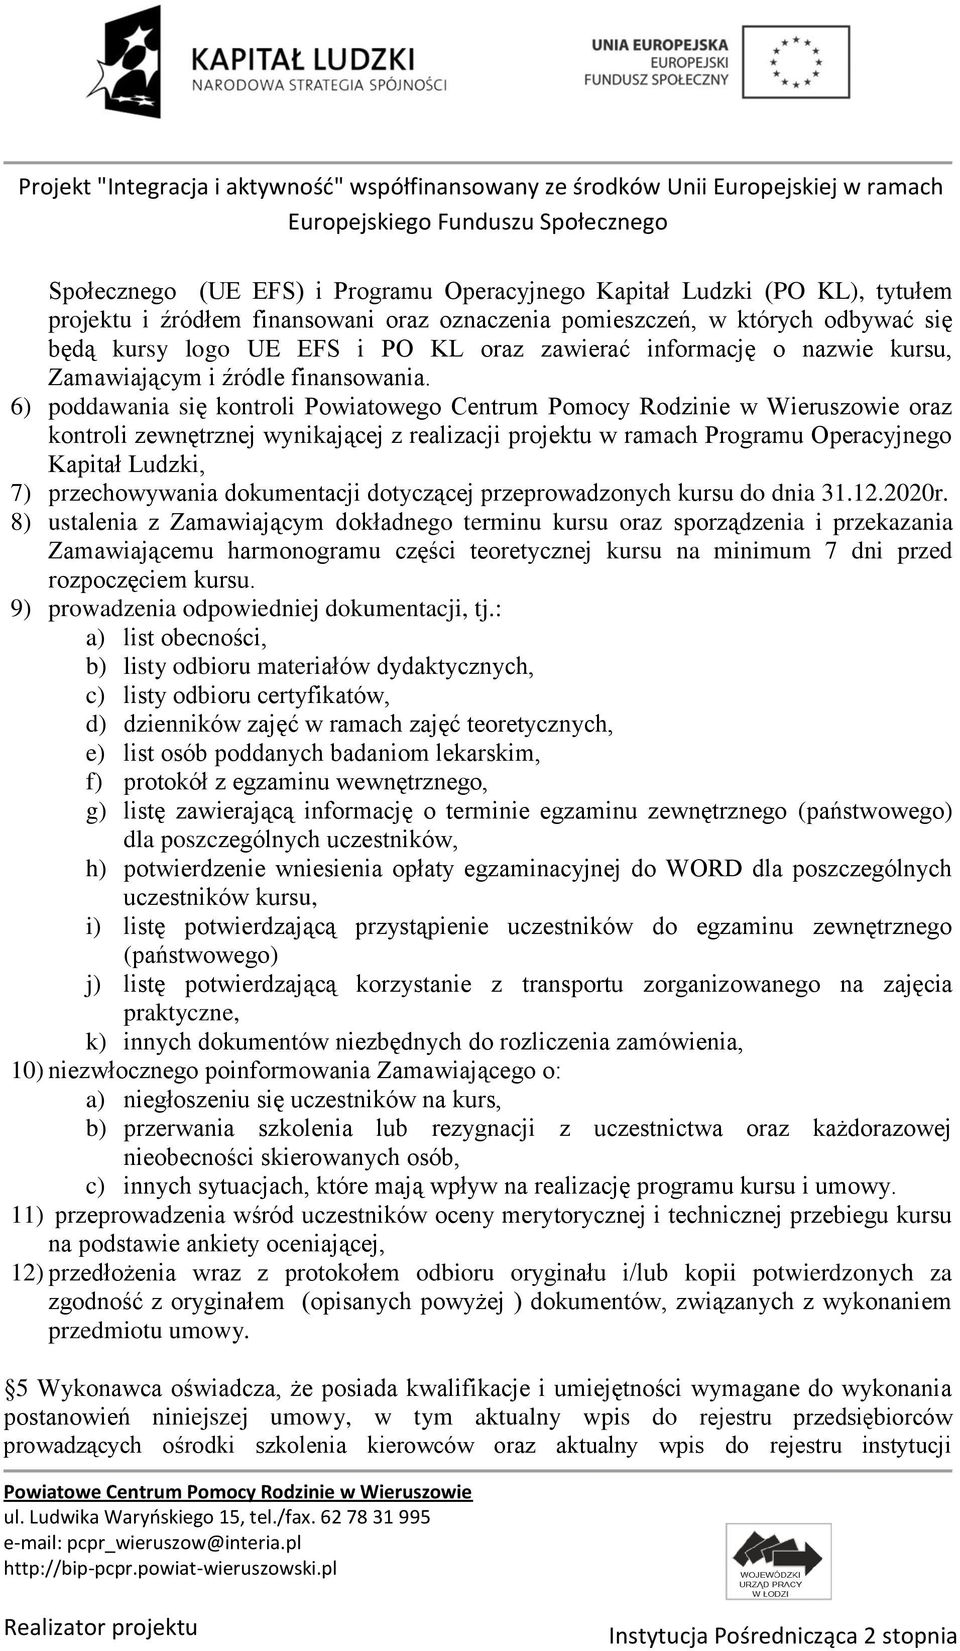 6) poddawania się kontroli Powiatowego Centrum Pomocy Rodzinie w Wieruszowie oraz kontroli zewnętrznej wynikającej z realizacji projektu w ramach Programu Operacyjnego Kapitał Ludzki, 7)